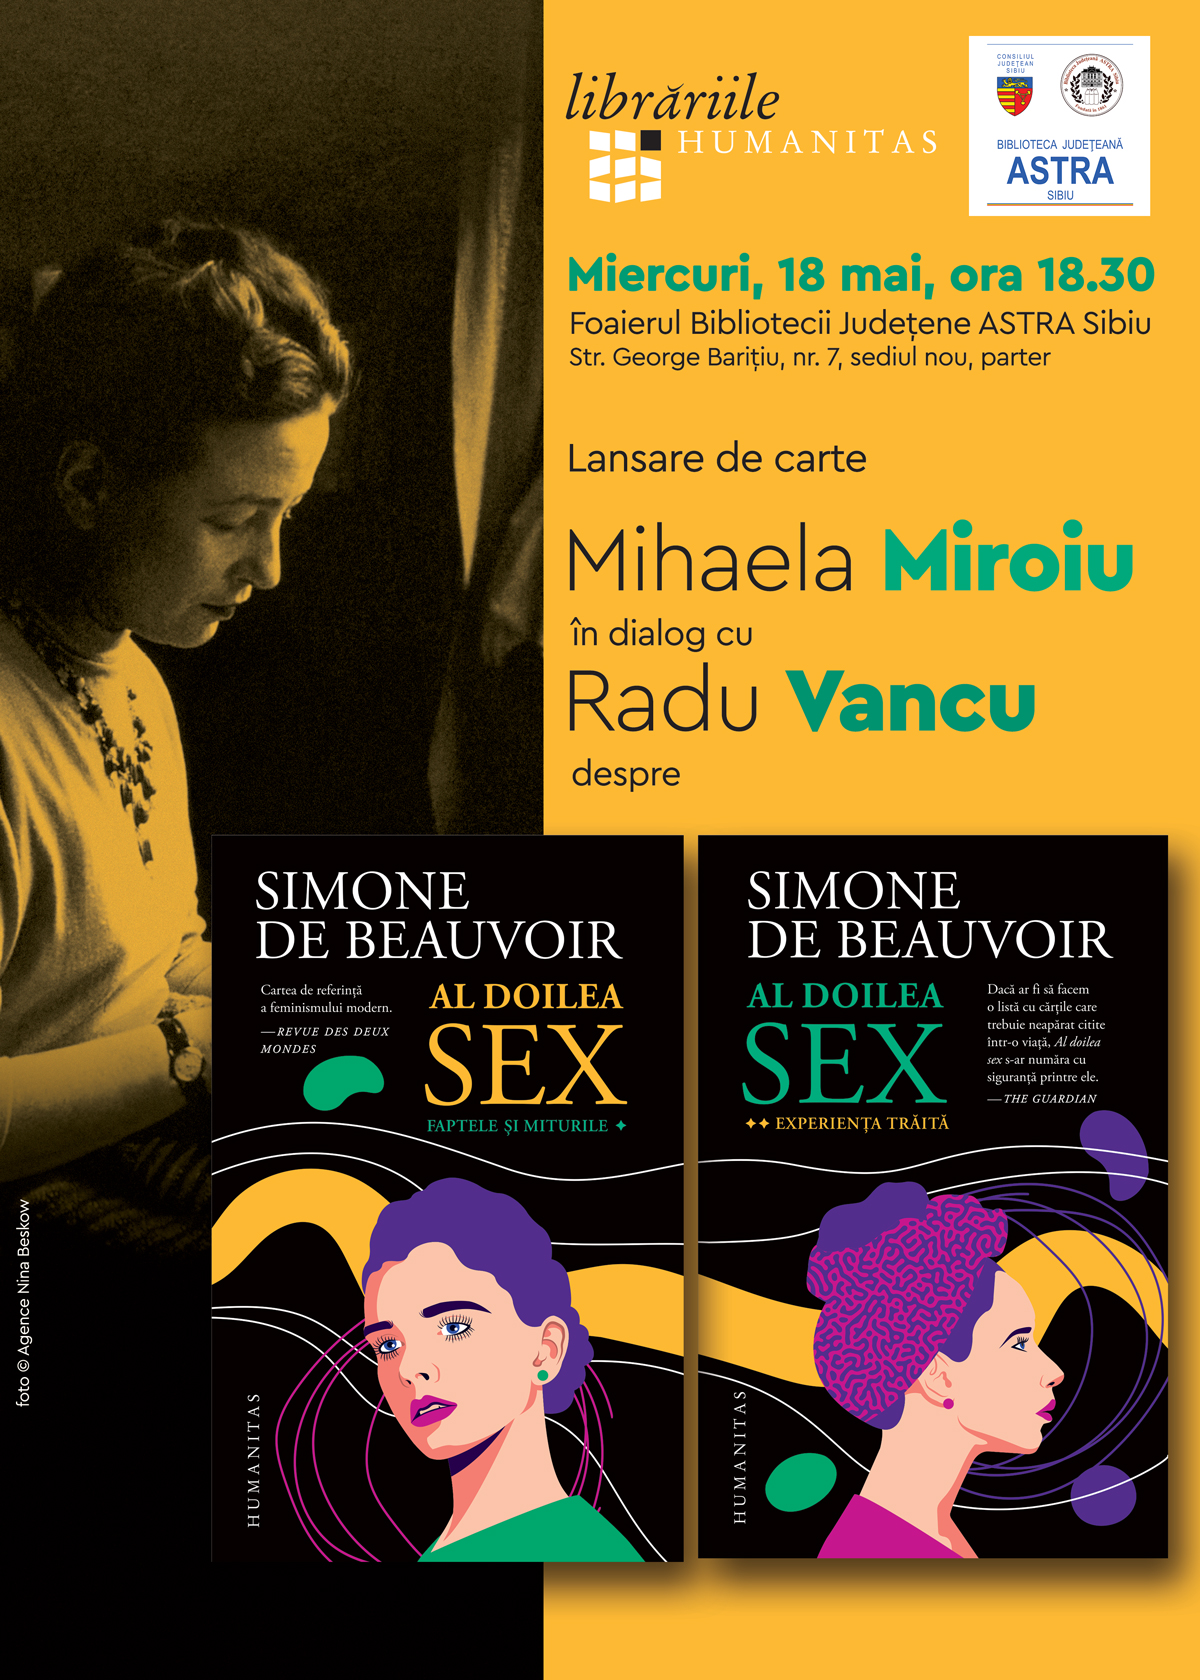 Lansarea Unei Noi Ediții A Cărții „al Doilea Sex” De Simone De Beauvoir La Biblioteca Astra 4956